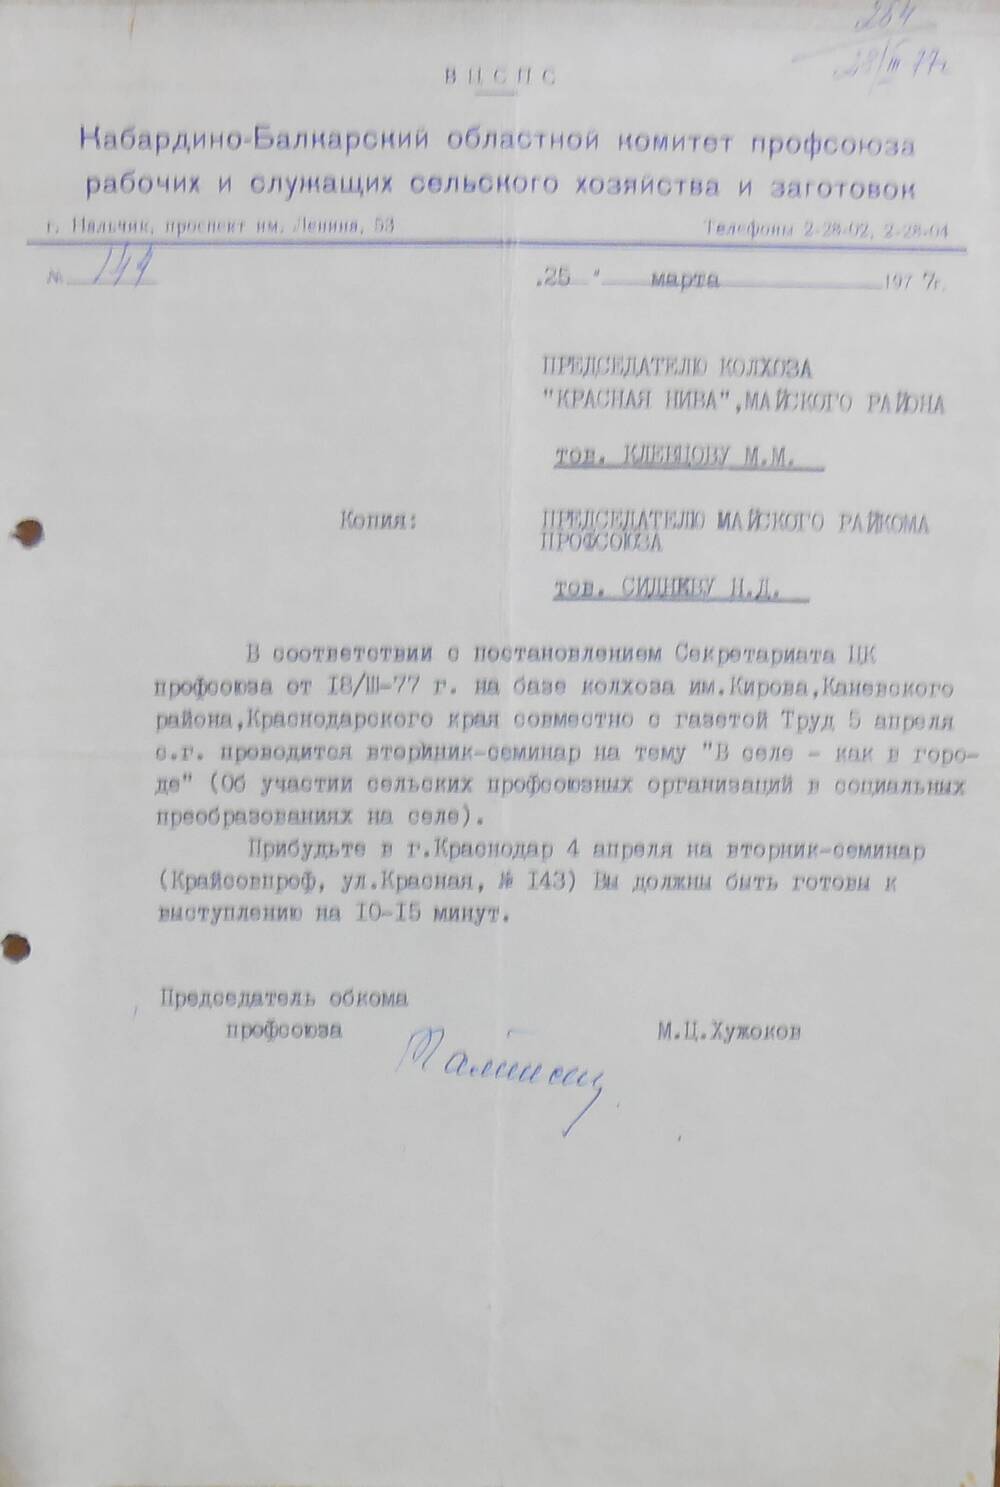 Письмо - приглашение председателю колхоза  Красная нива.